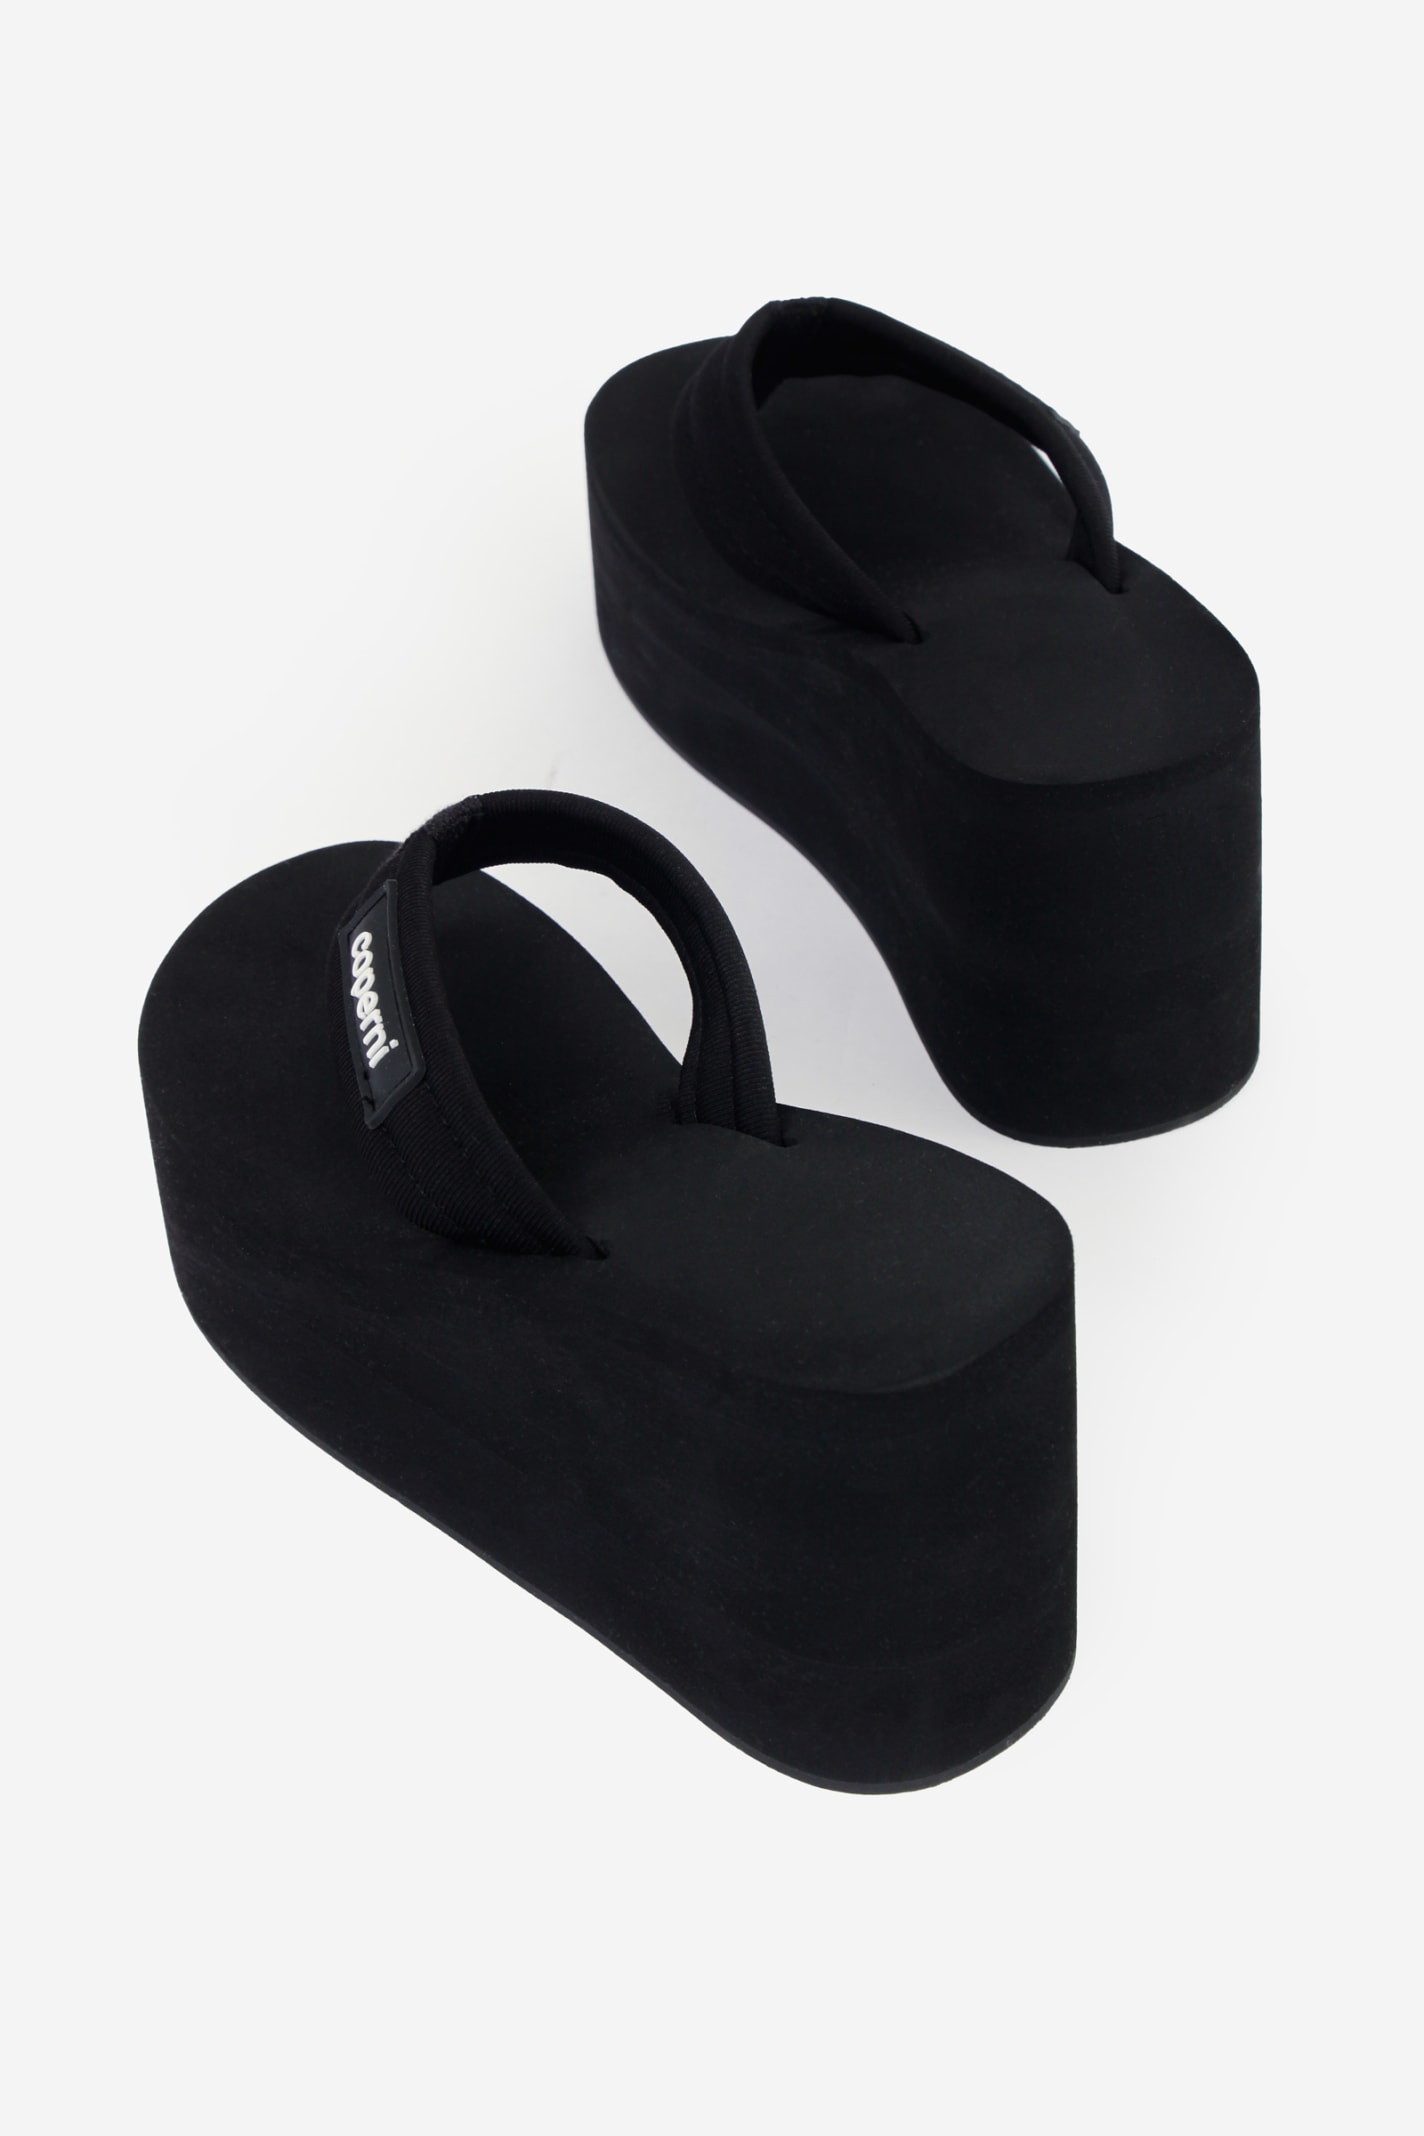 Shop Coperni Branded Wedge Sandals In Black